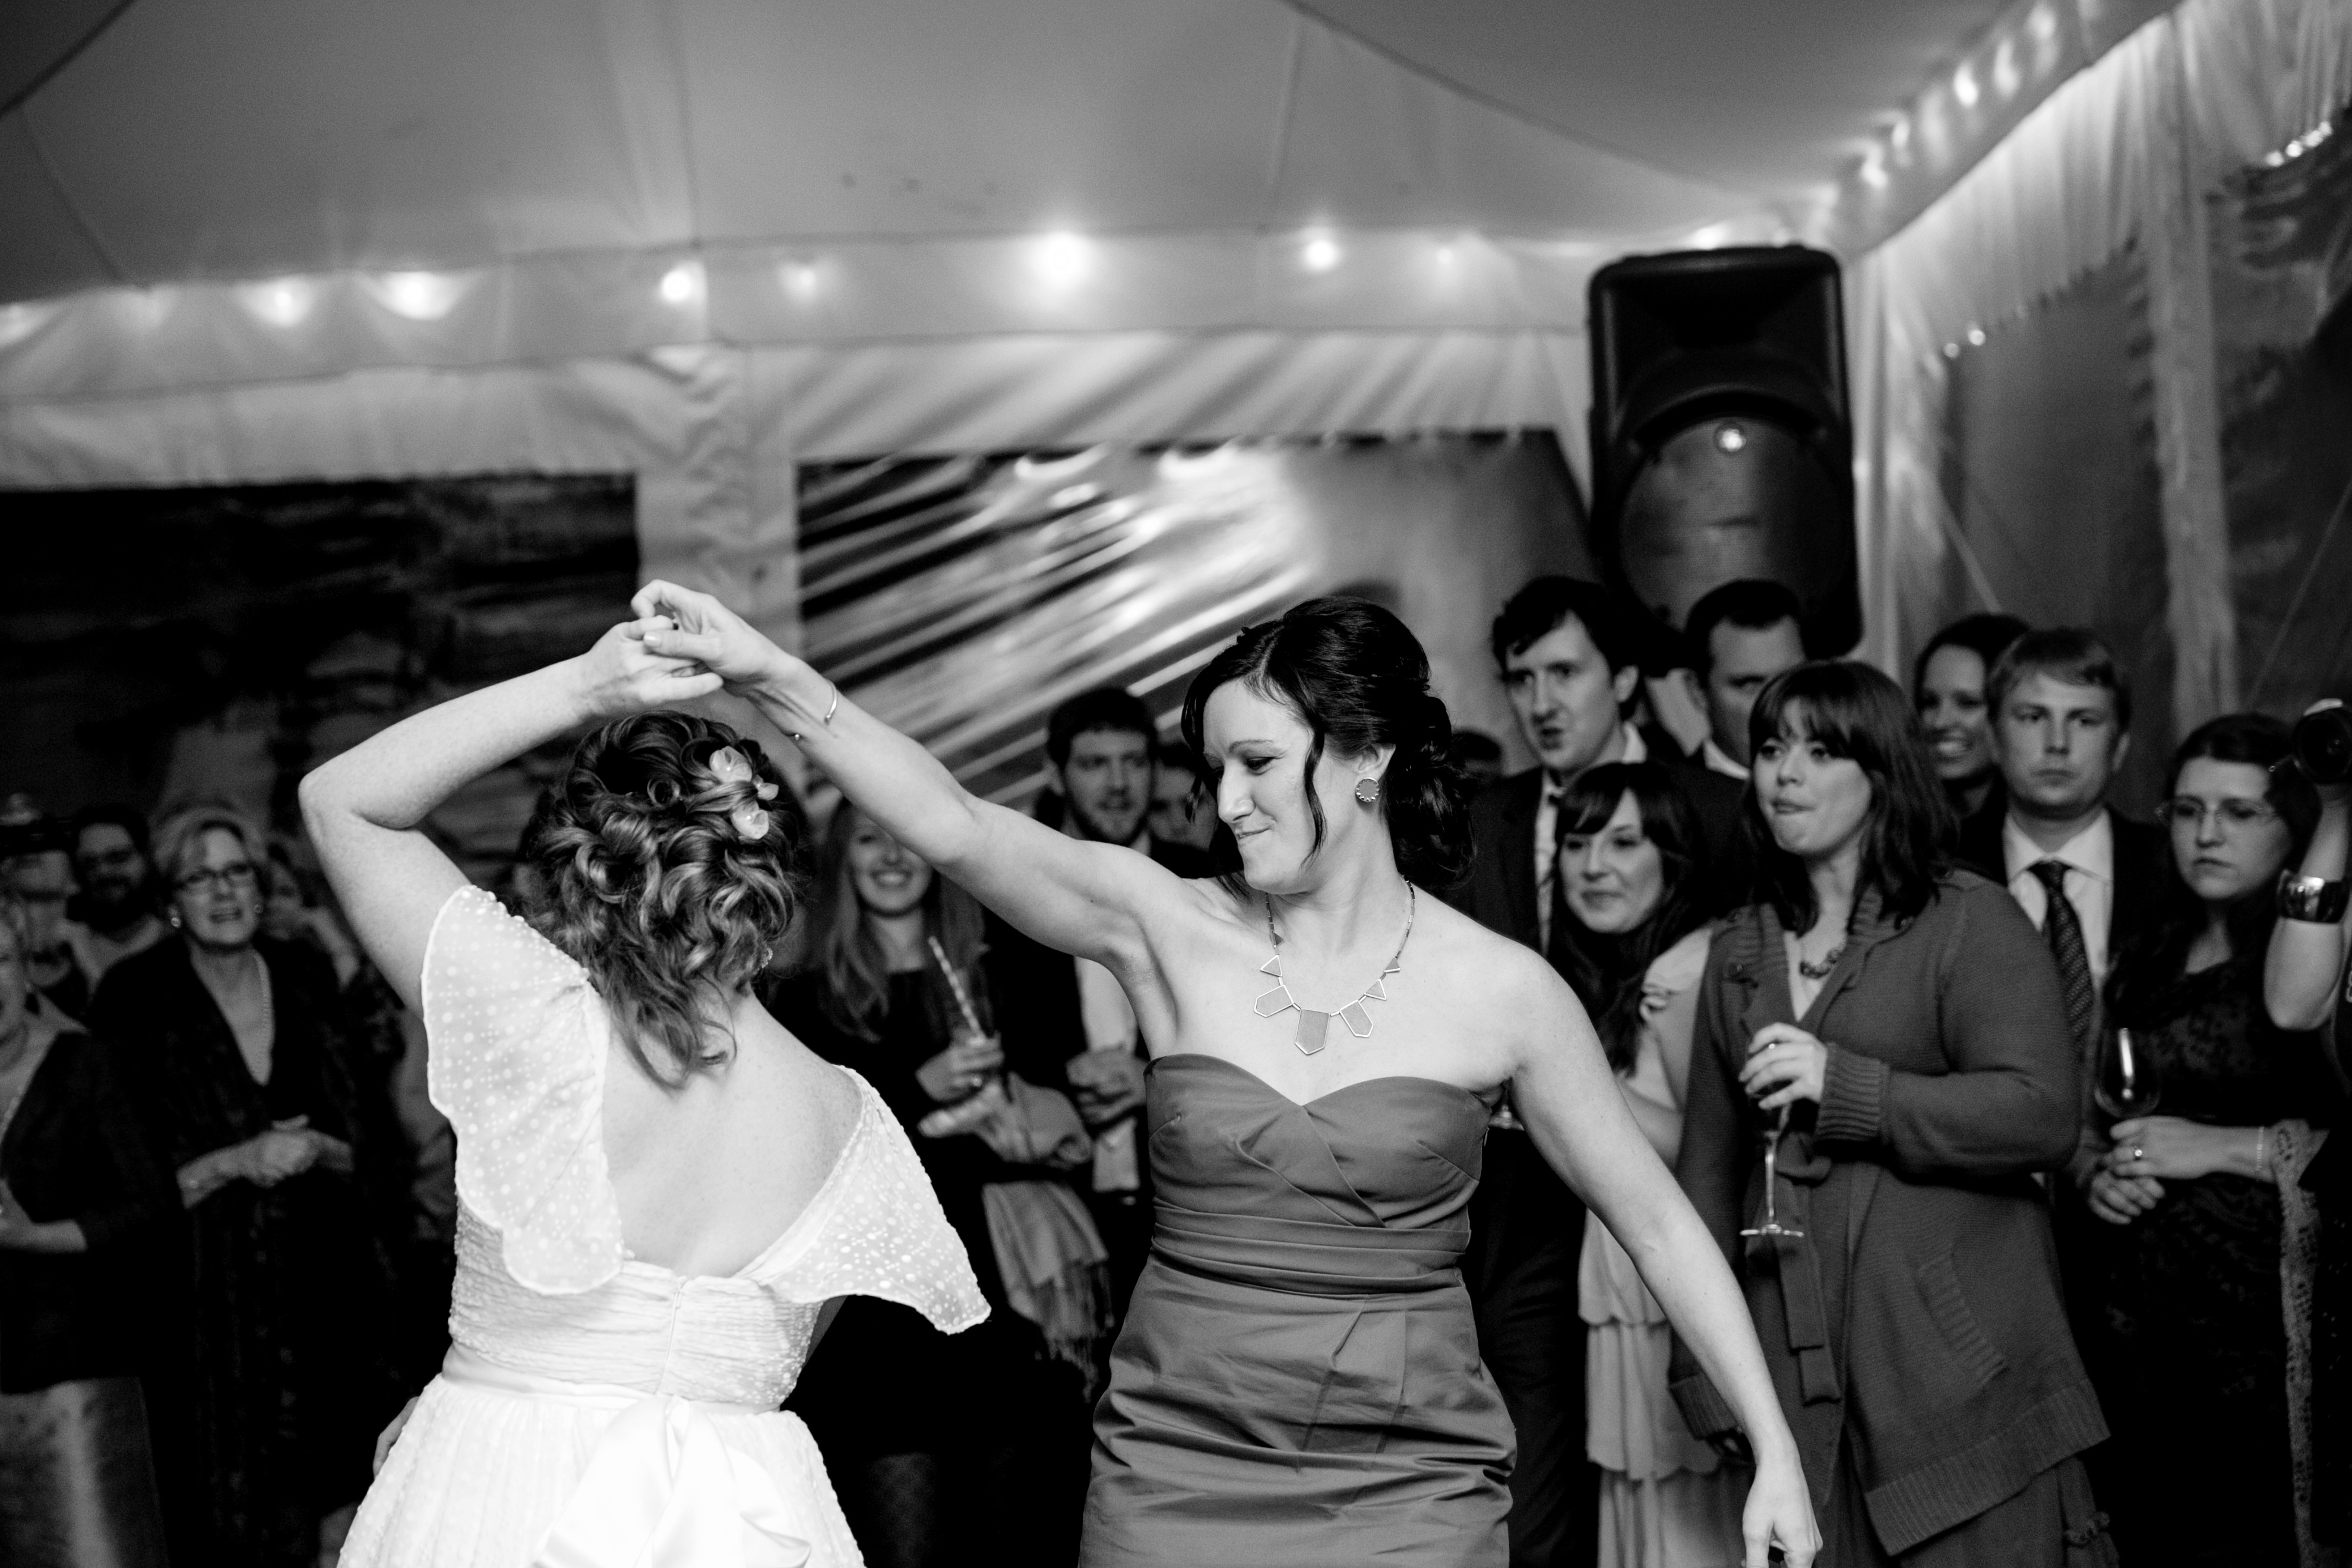 dancing at a wedding